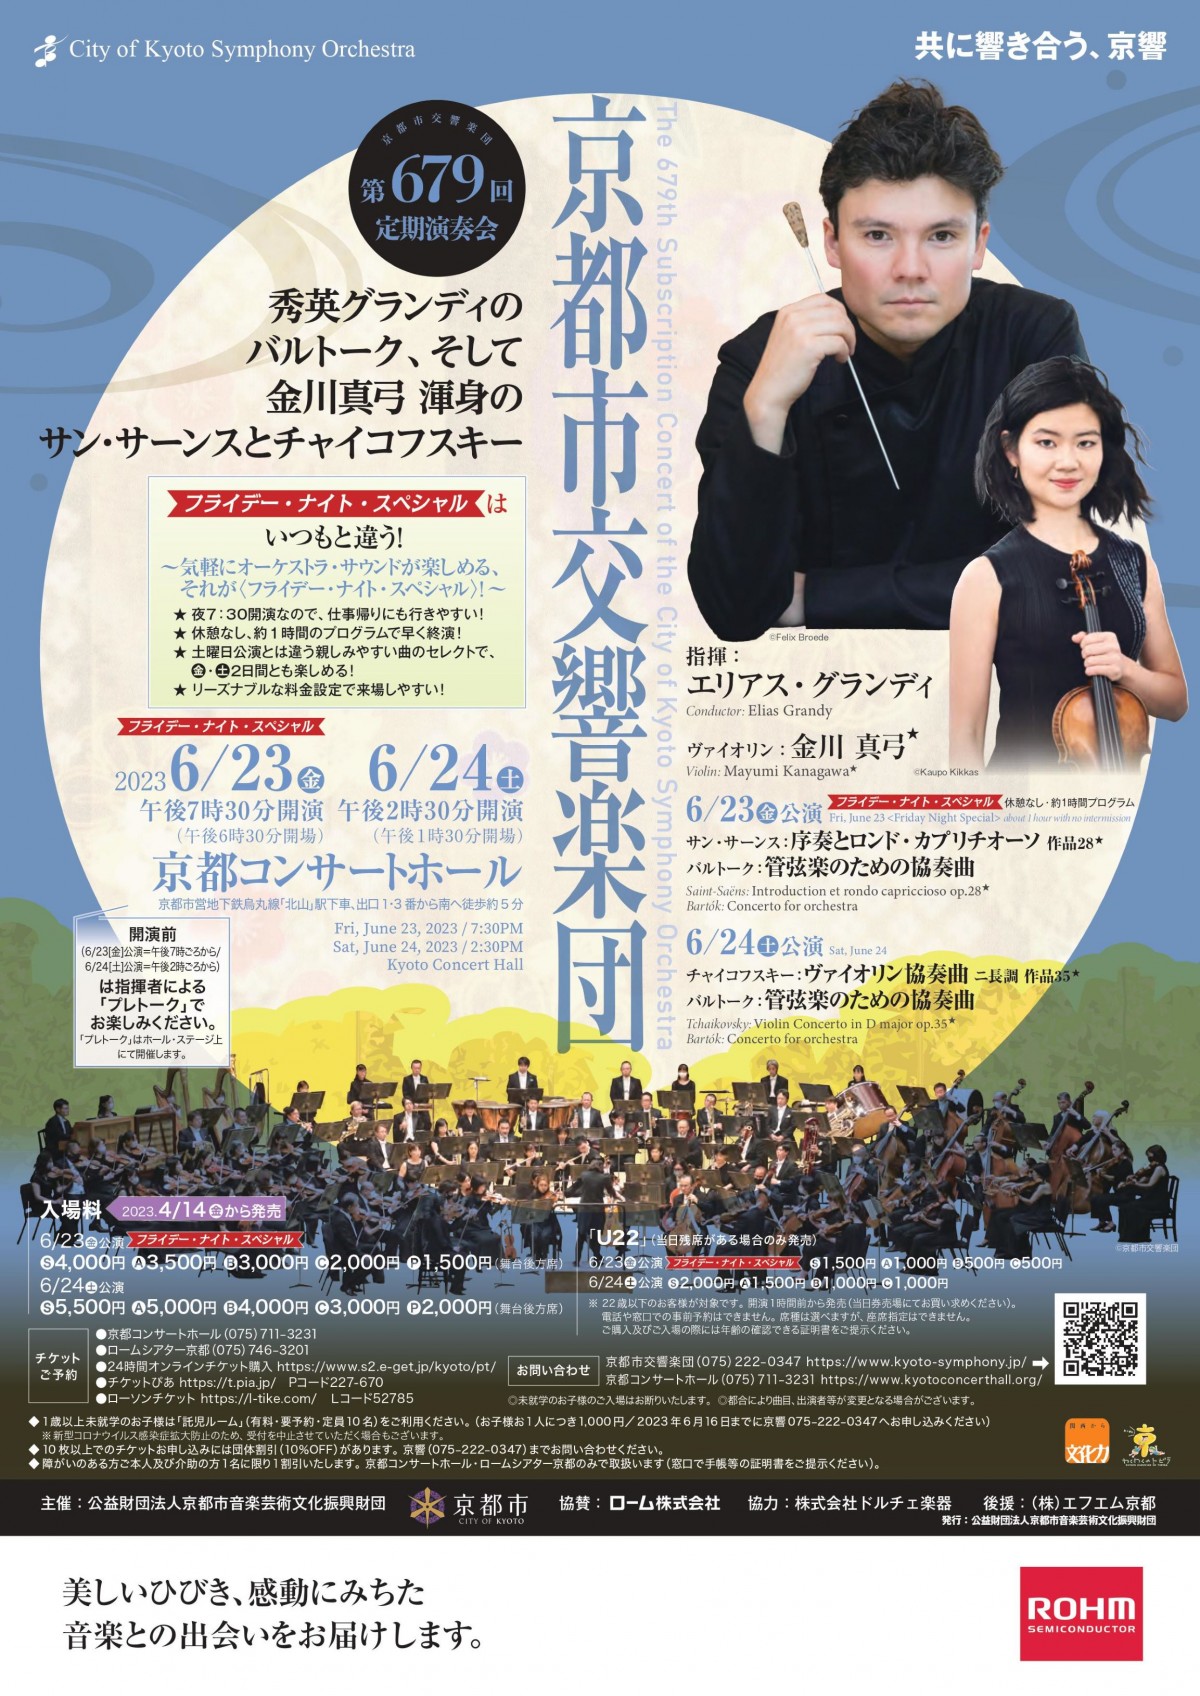 京都市交響楽団第679回定期演奏会のフライヤー画像